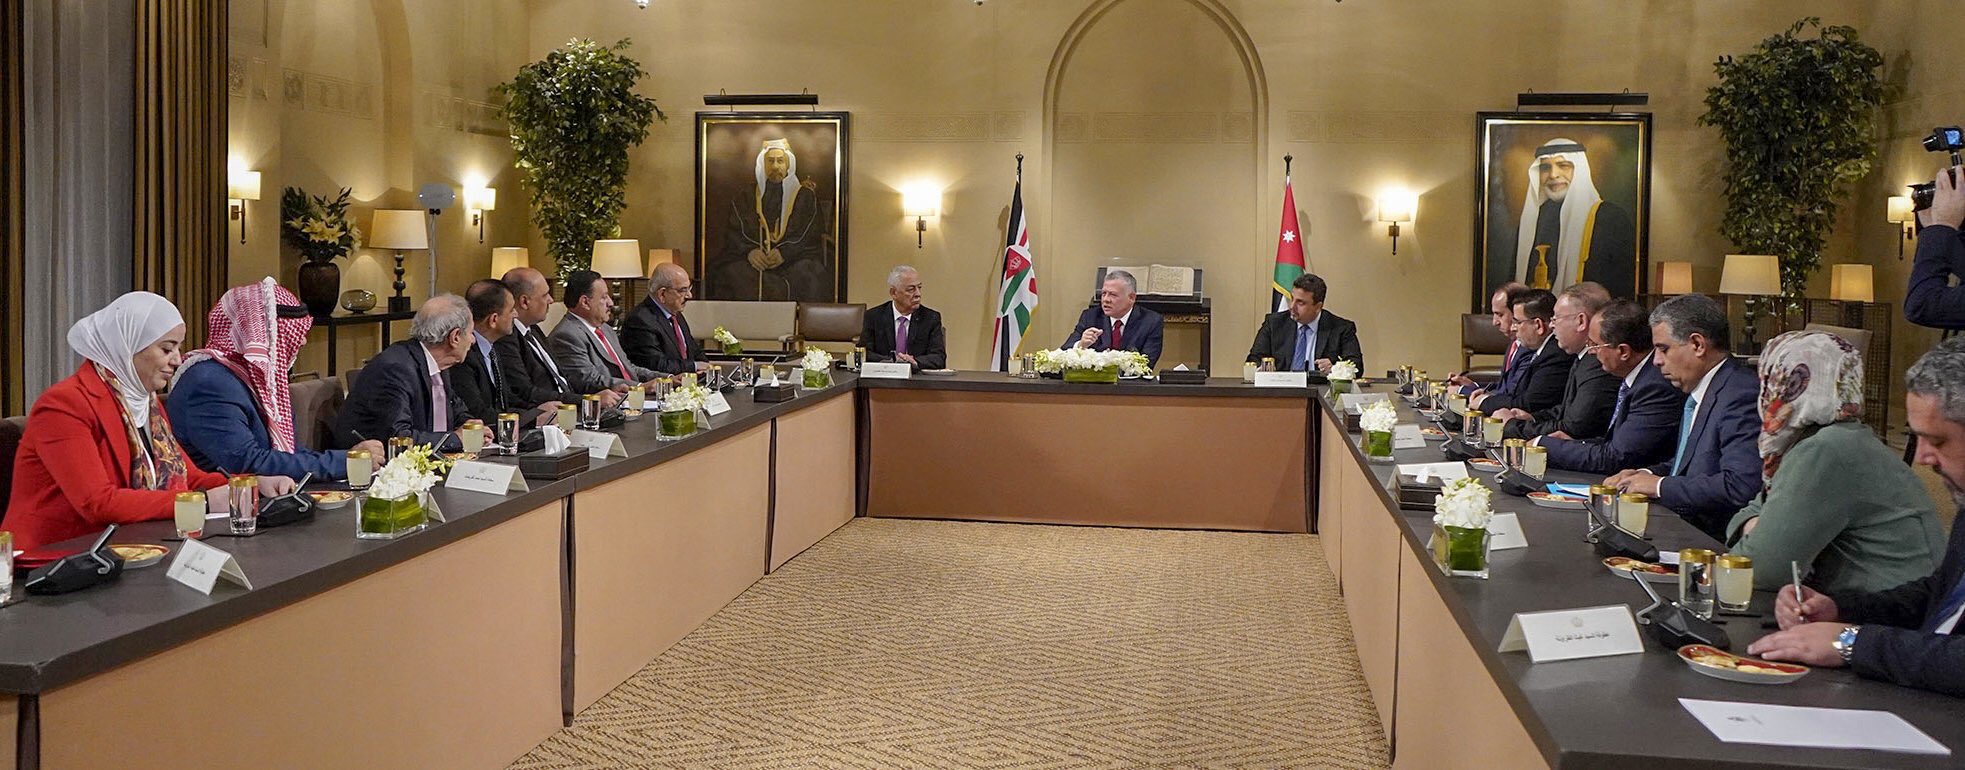 البرلمان الأردني يلتقي رؤساء لجان تحسين الخدمات بالمخيمات